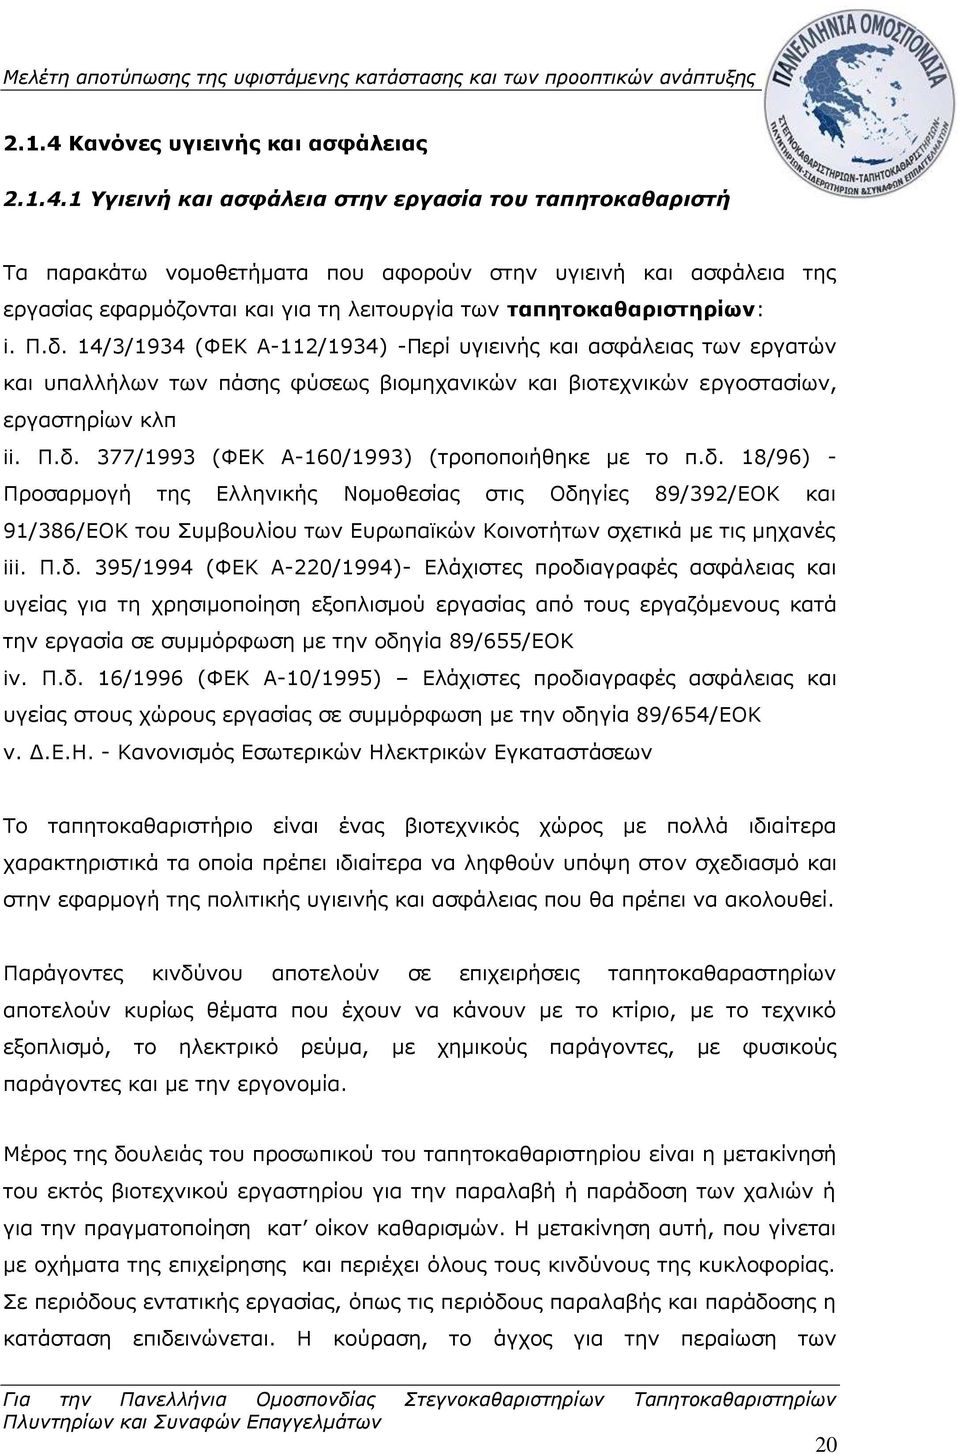 δ. 18/96) - Προσαρμογή της Ελληνικής Νομοθεσίας στις Οδηγίες 89/392/ΕΟΚ και 91/386/ΕΟΚ του Συμβουλίου των Ευρωπαϊκών Κοινοτήτων σχετικά με τις μηχανές iii. Π.δ. 395/1994 (ΦΕΚ Α-220/1994)- Ελάχιστες προδιαγραφές ασφάλειας και υγείας για τη χρησιμοποίηση εξοπλισμού εργασίας από τους εργαζόμενους κατά την εργασία σε συμμόρφωση με την οδηγία 89/655/ΕΟΚ iv.